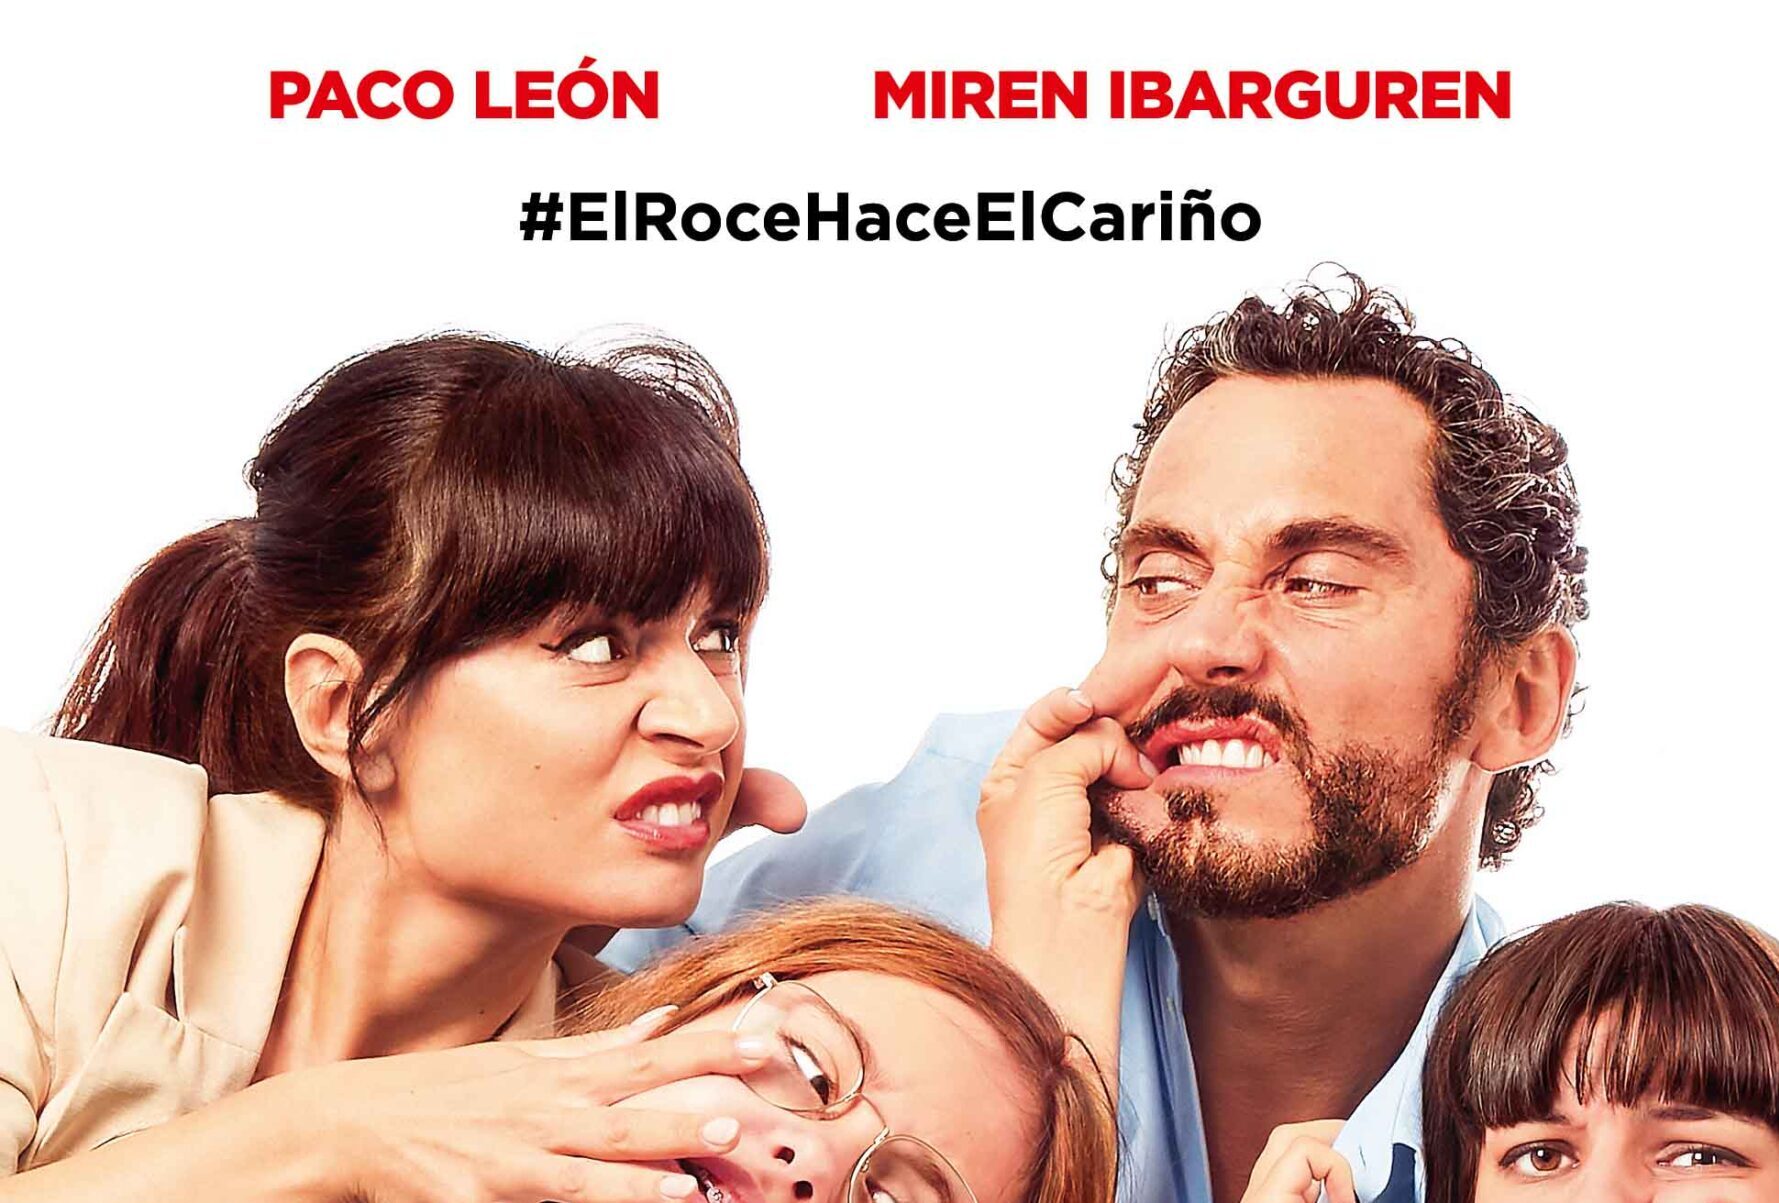 Mamá o papá. Crítica de la película con Paco León y Miren Ibarguren